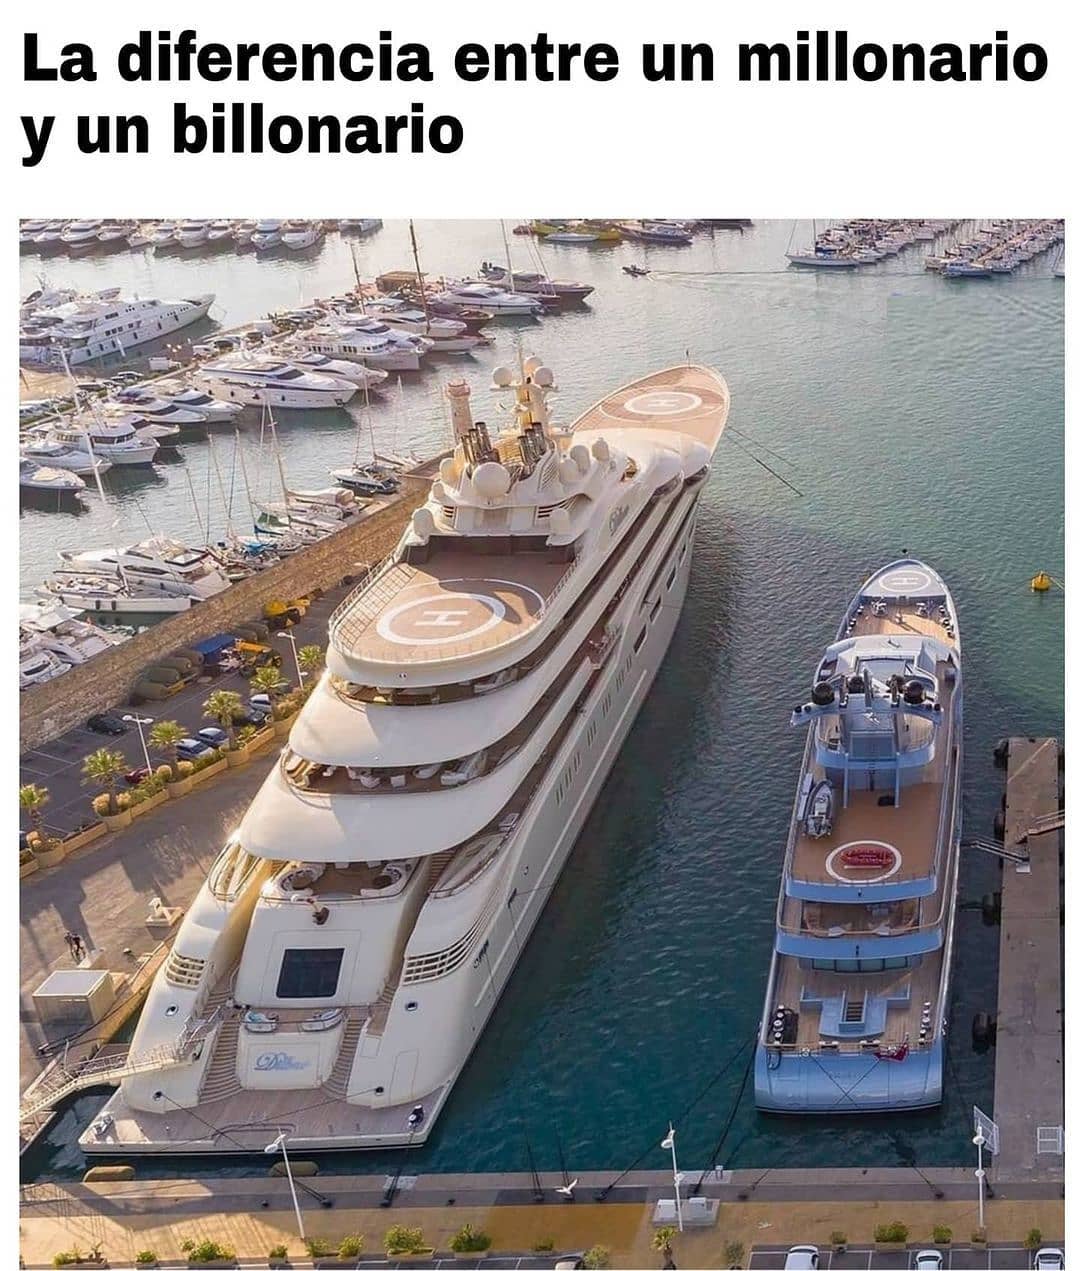 La diferencia entre un millonario y un billonario.